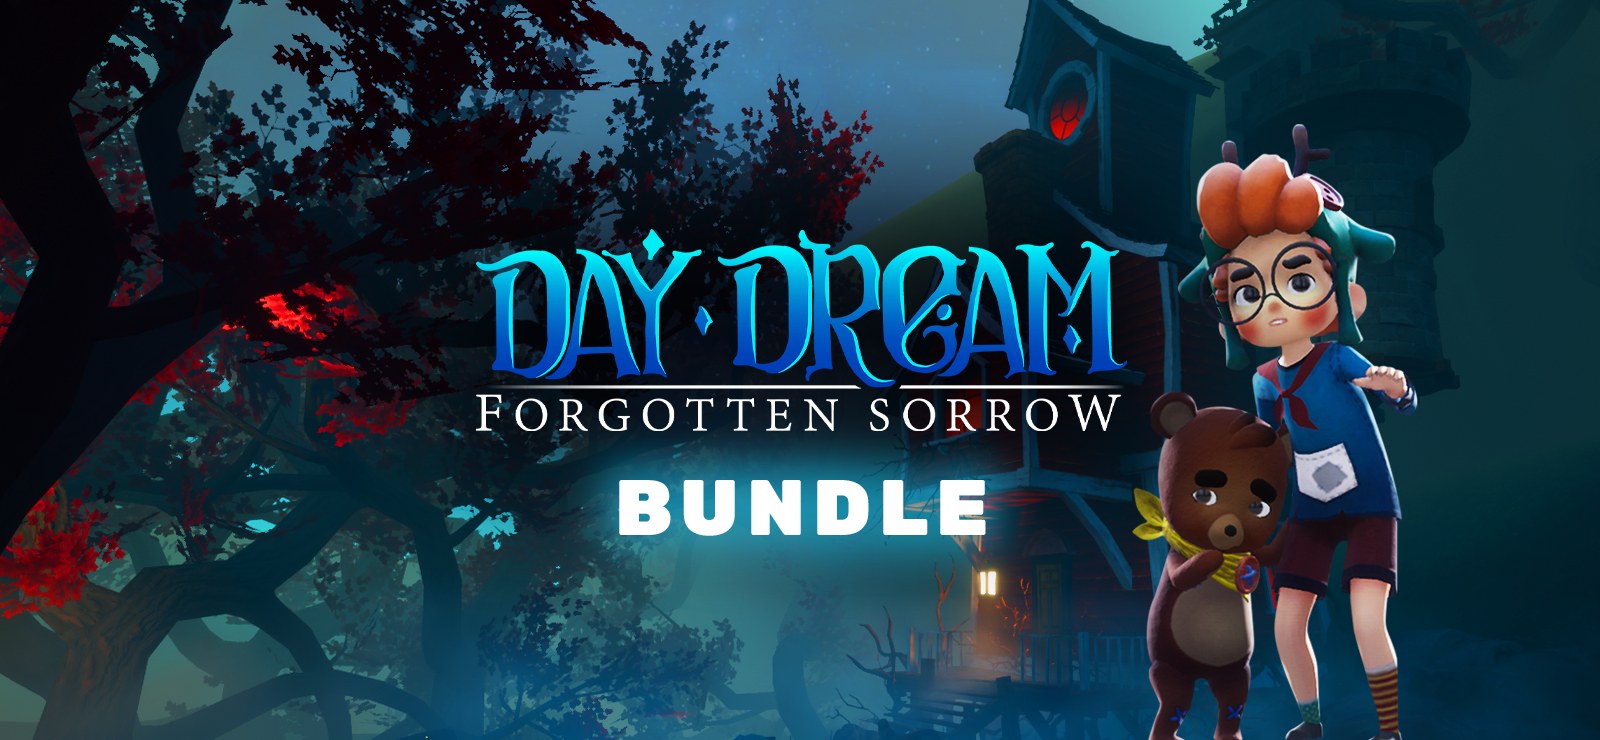 Daydream: Forgotten Sorrow Bundle